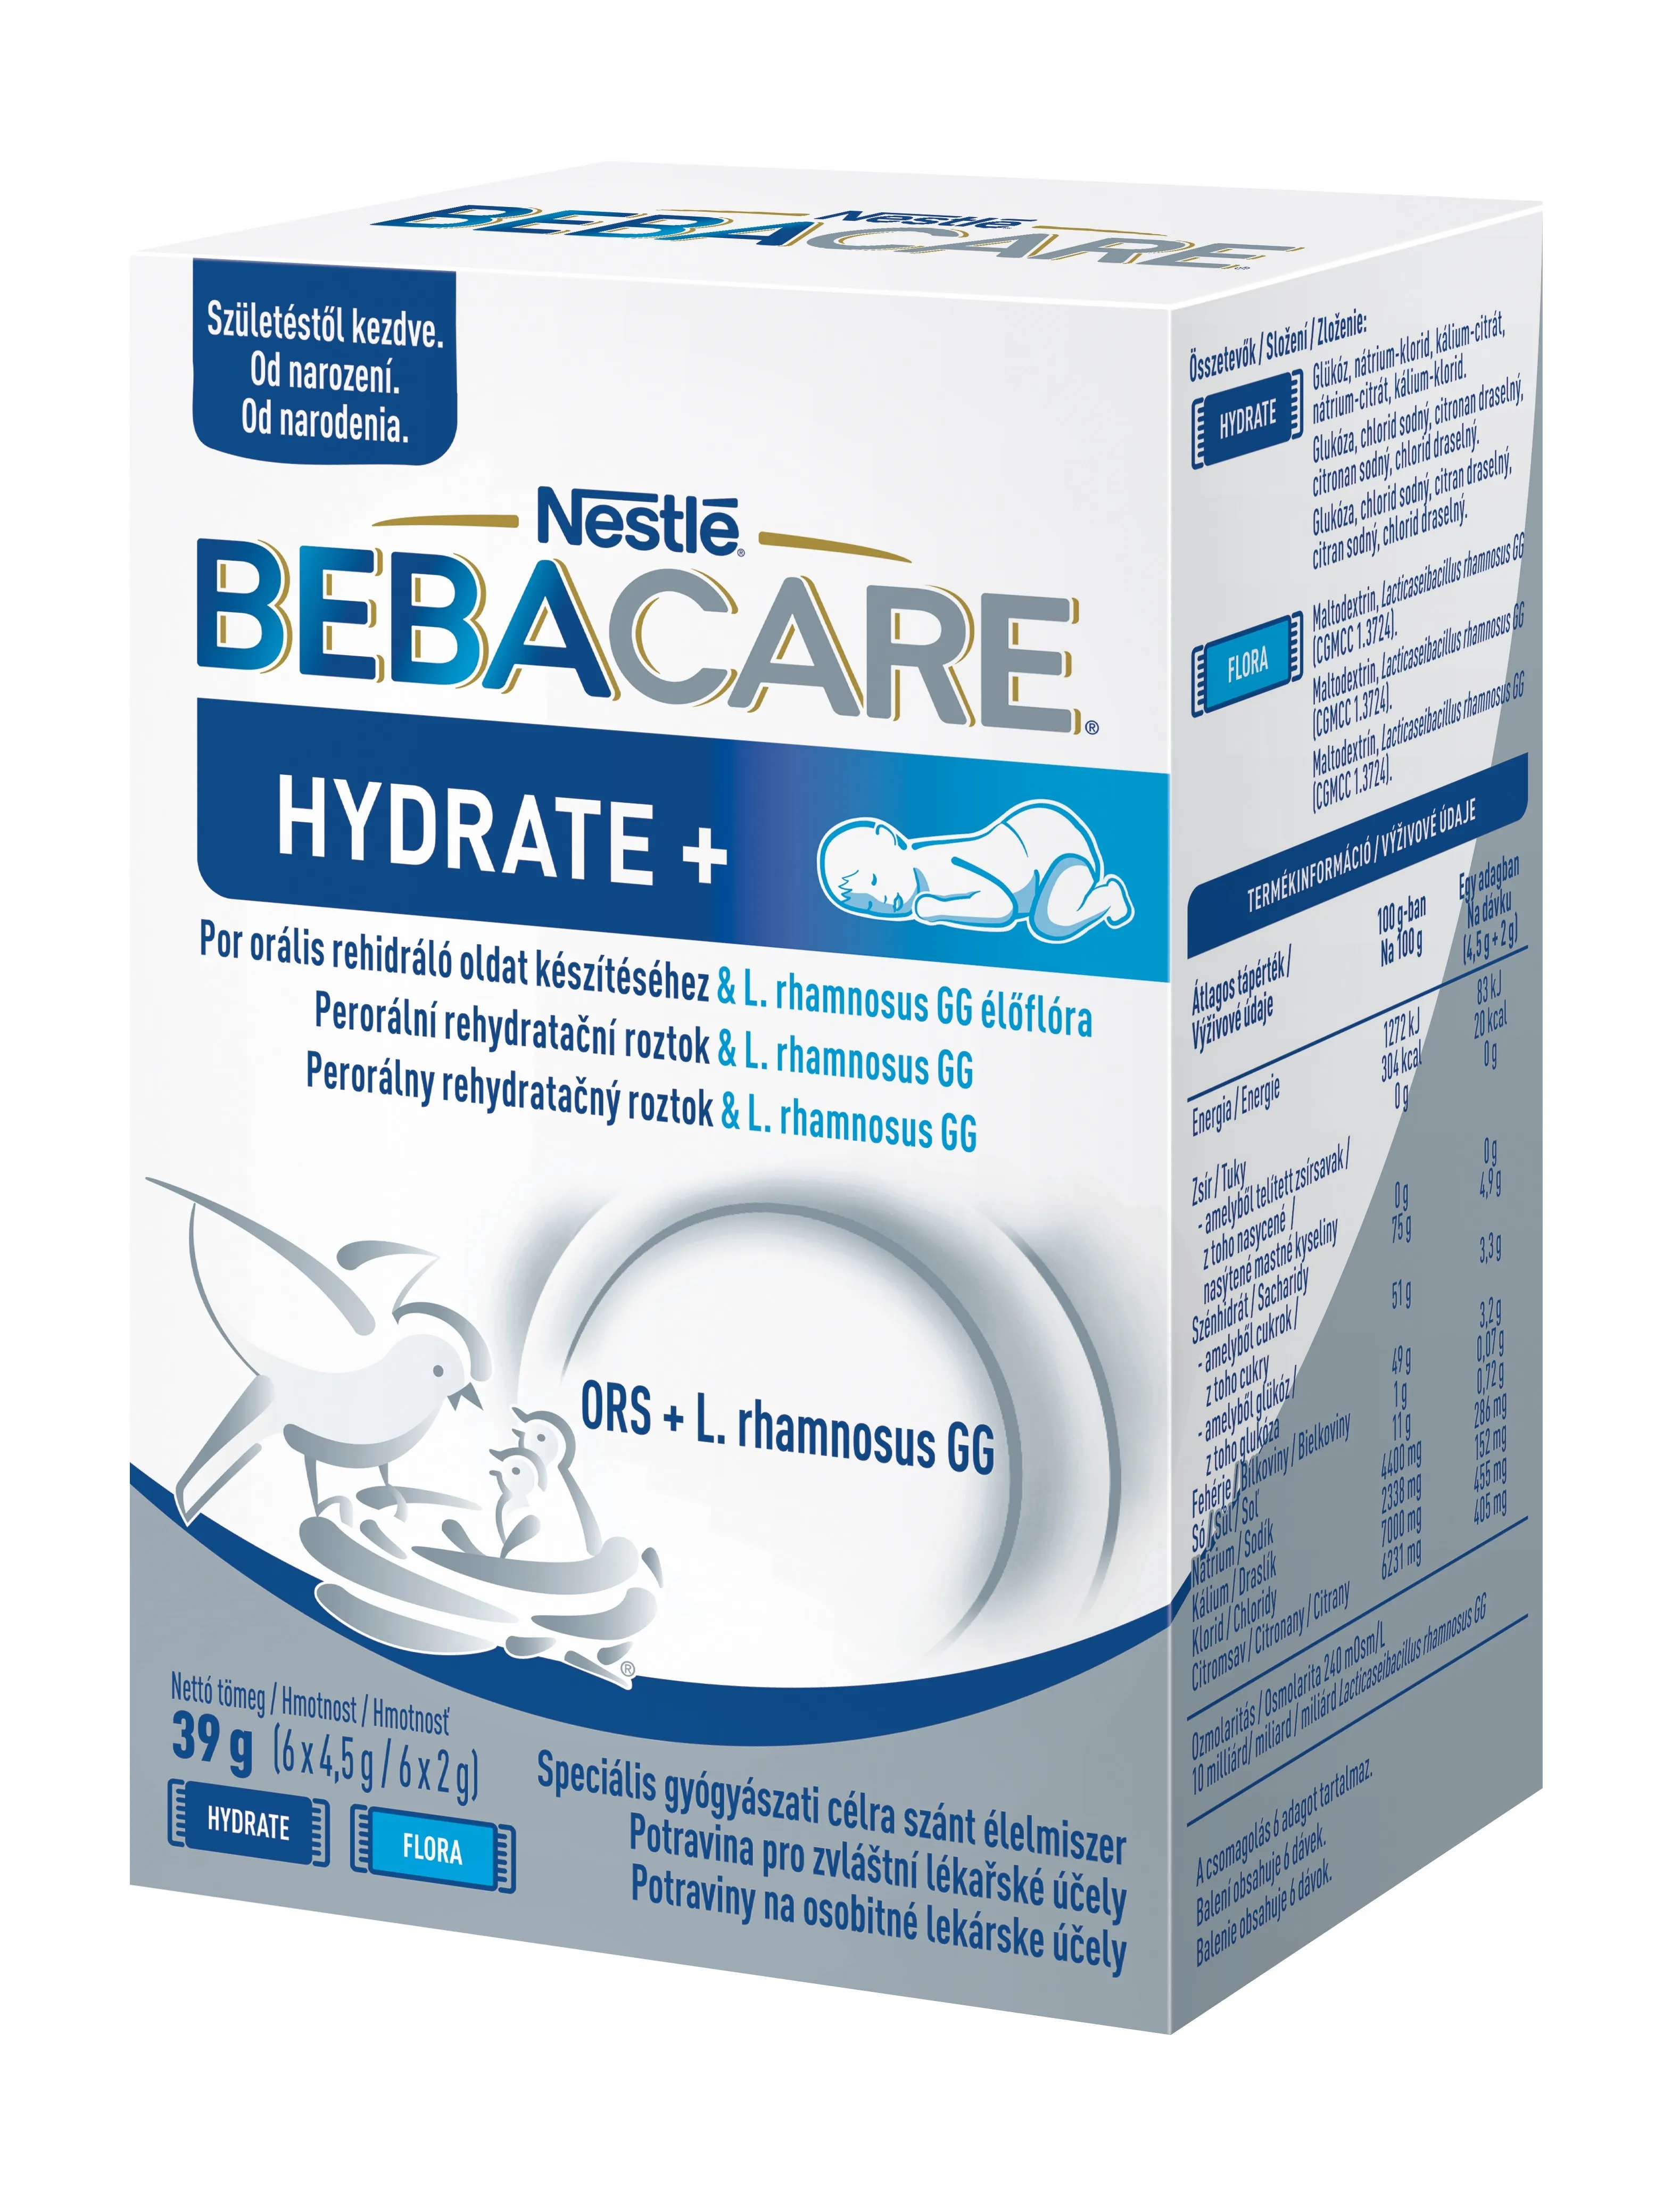 BEBACARE HYDRATE+ (od narodenia) 1×39 g, rehydratačný roztok s baktériami mliečneho kvasenia